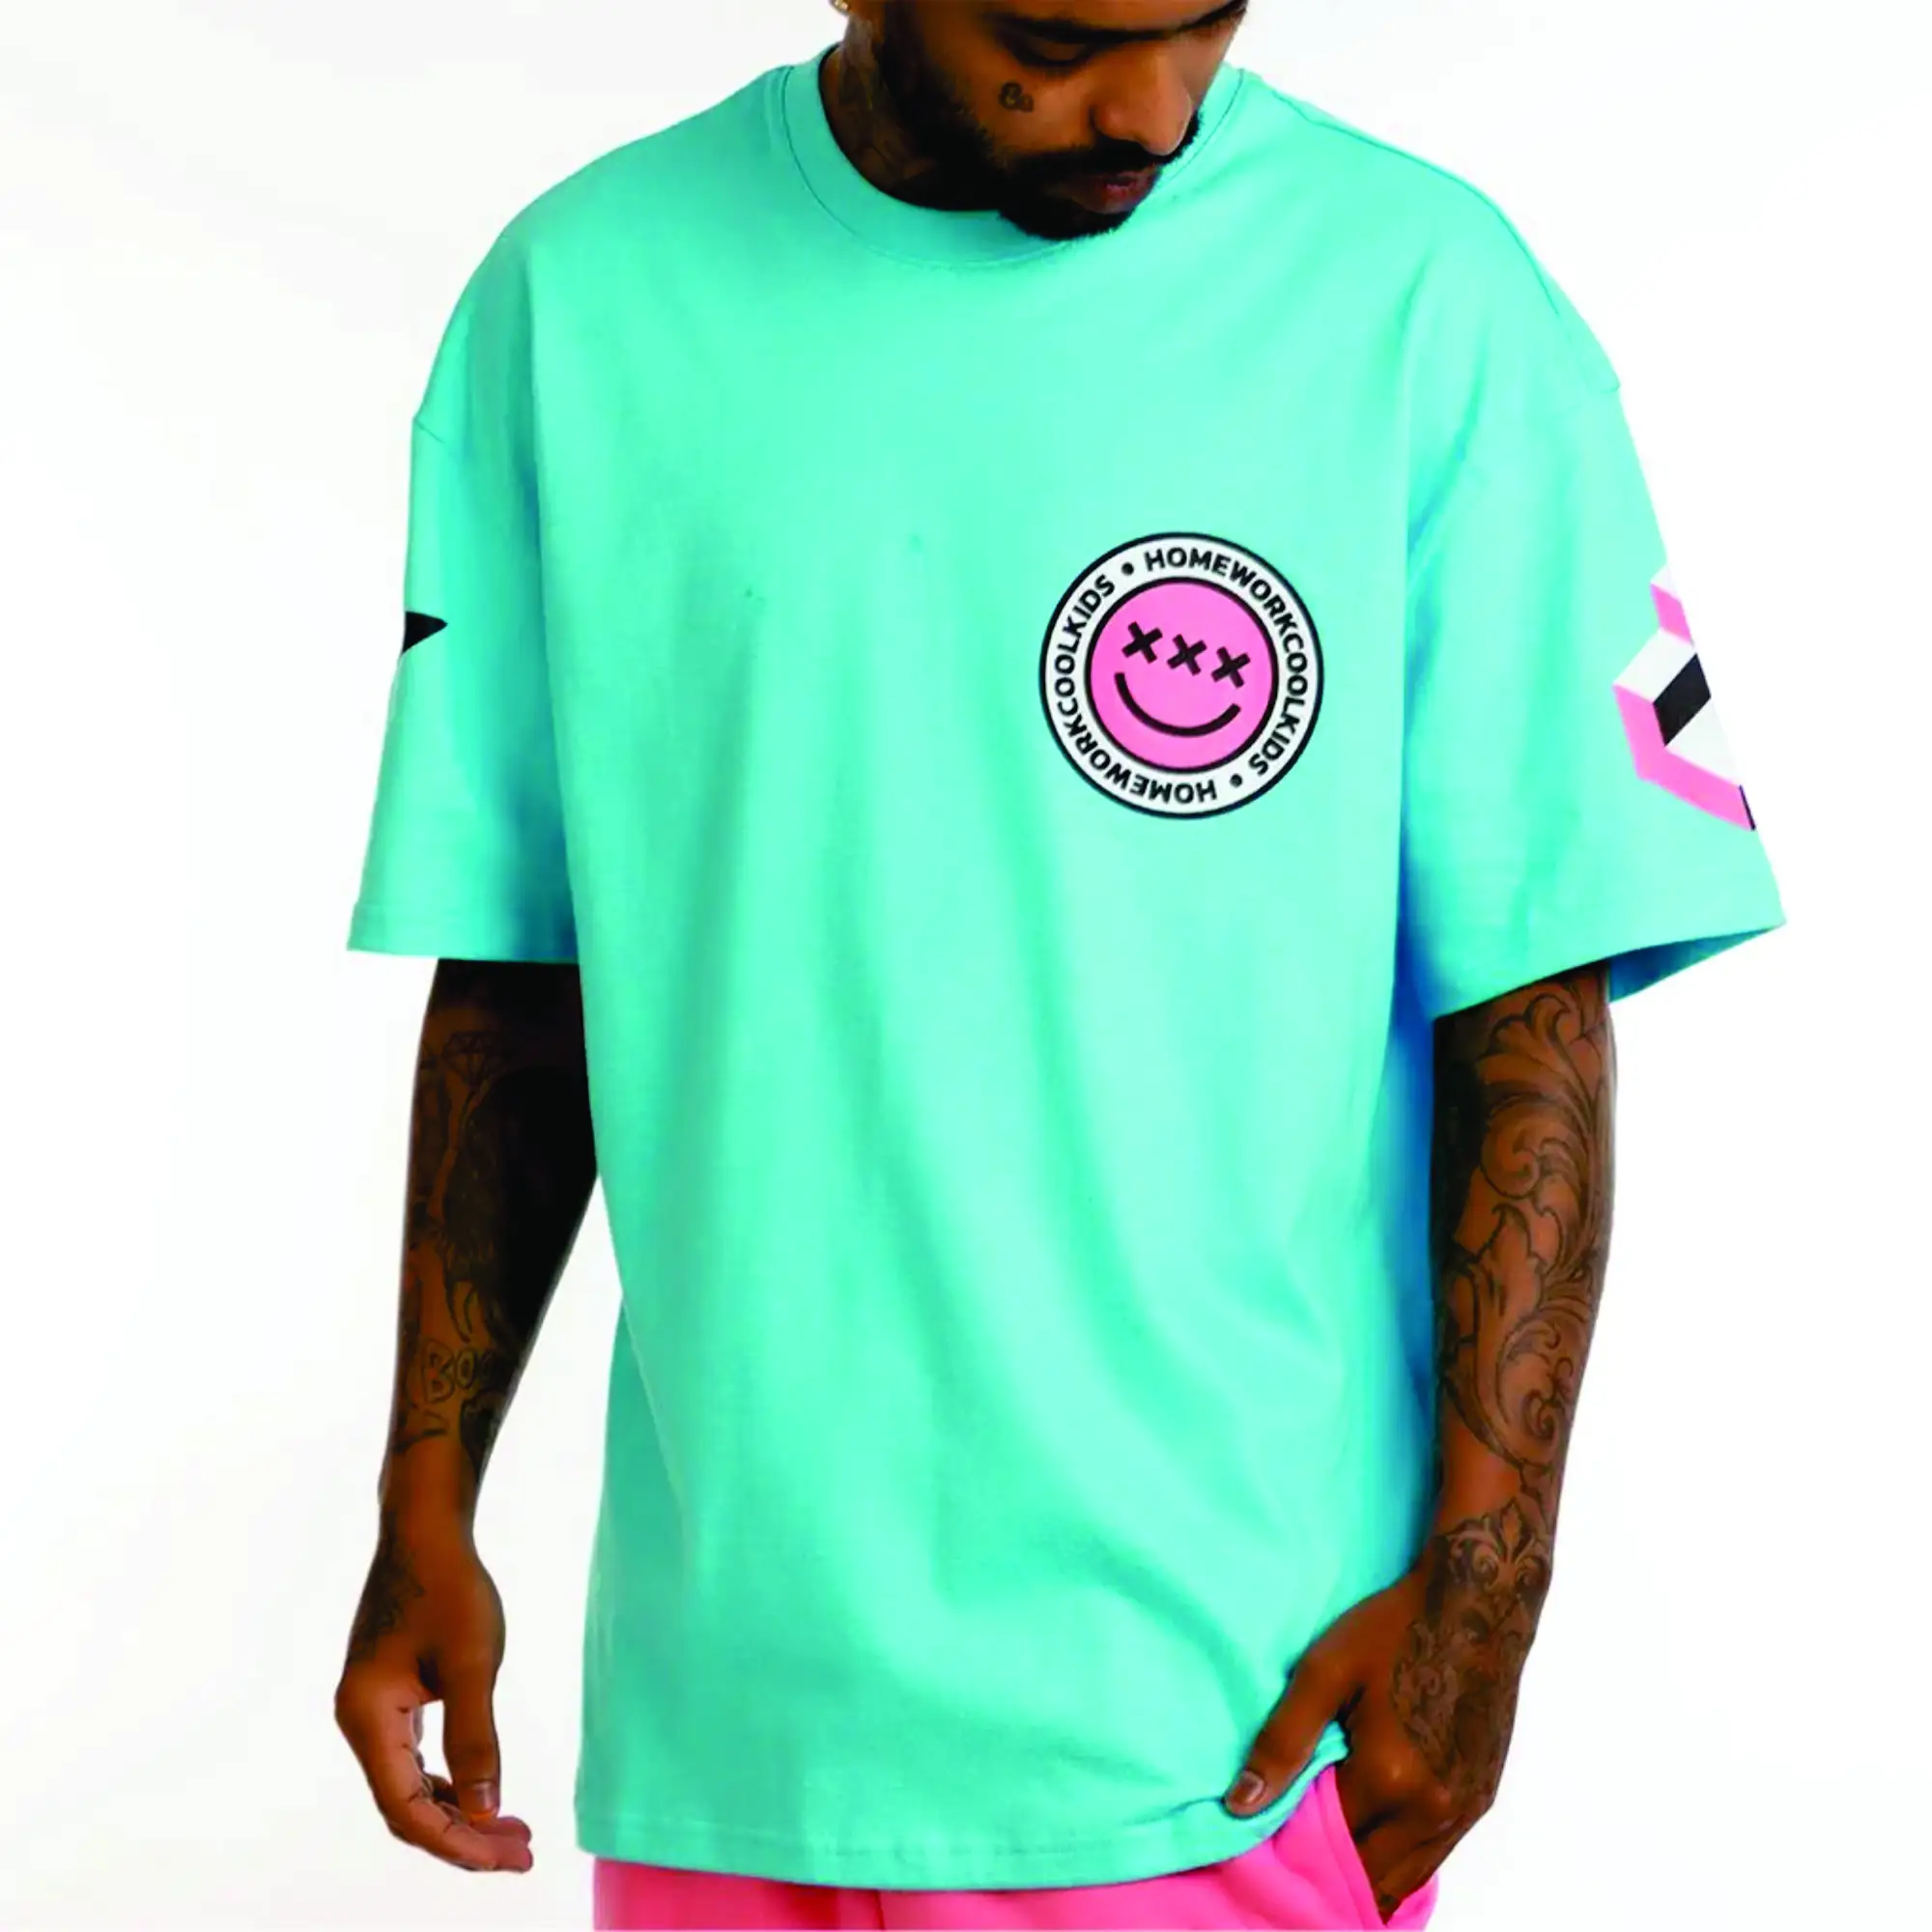 사용자 정의 제조 업체 하이 칼라 스카이 블루와 화이트 남성 힙합 셔츠 대형 스트리트 스타일 티셔츠